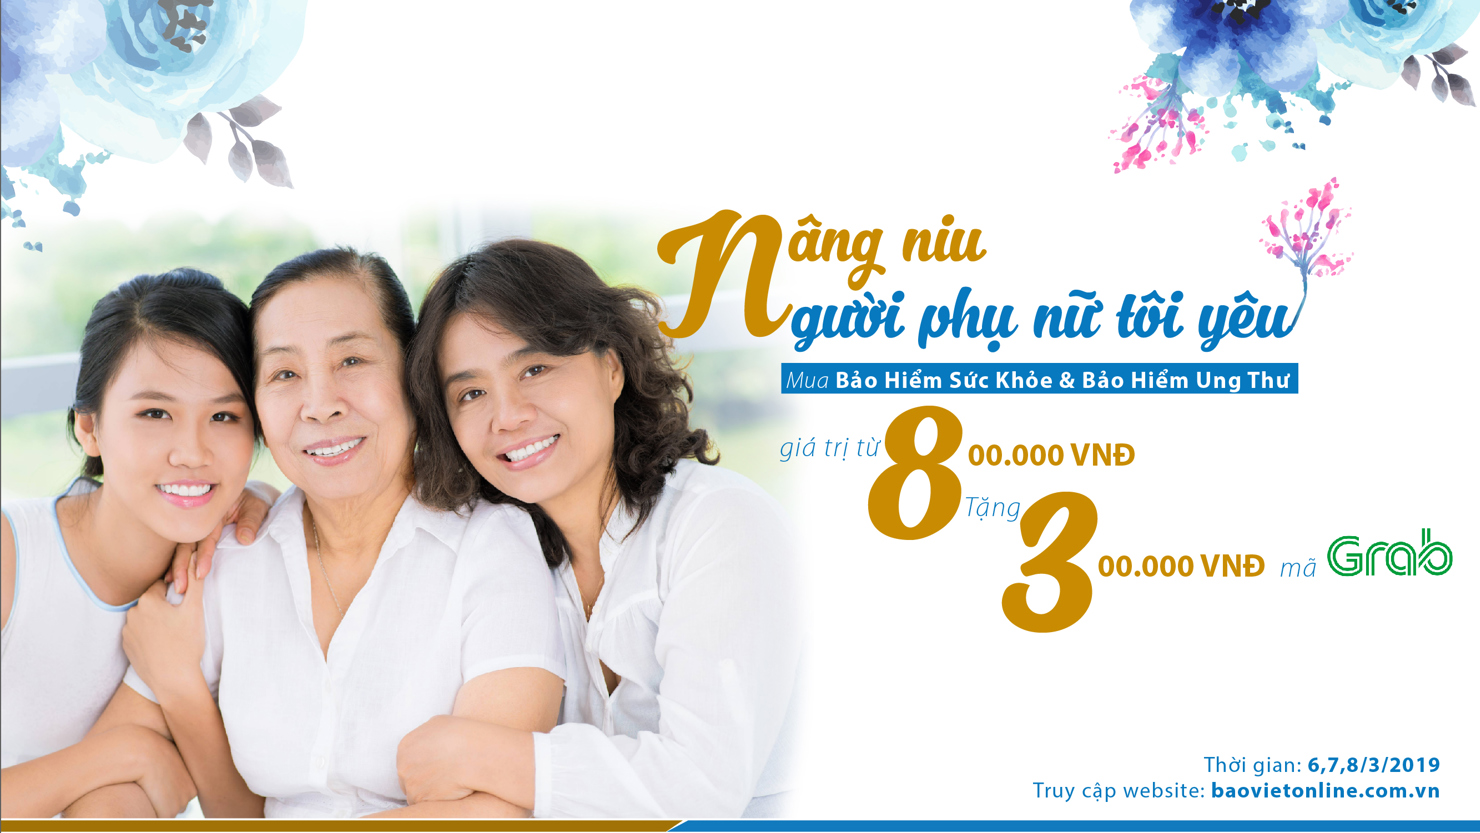 Chương trình khuyến mãi “Nâng niu người phụ nữ tôi yêu” của Bảo hiểm Bảo Việt.